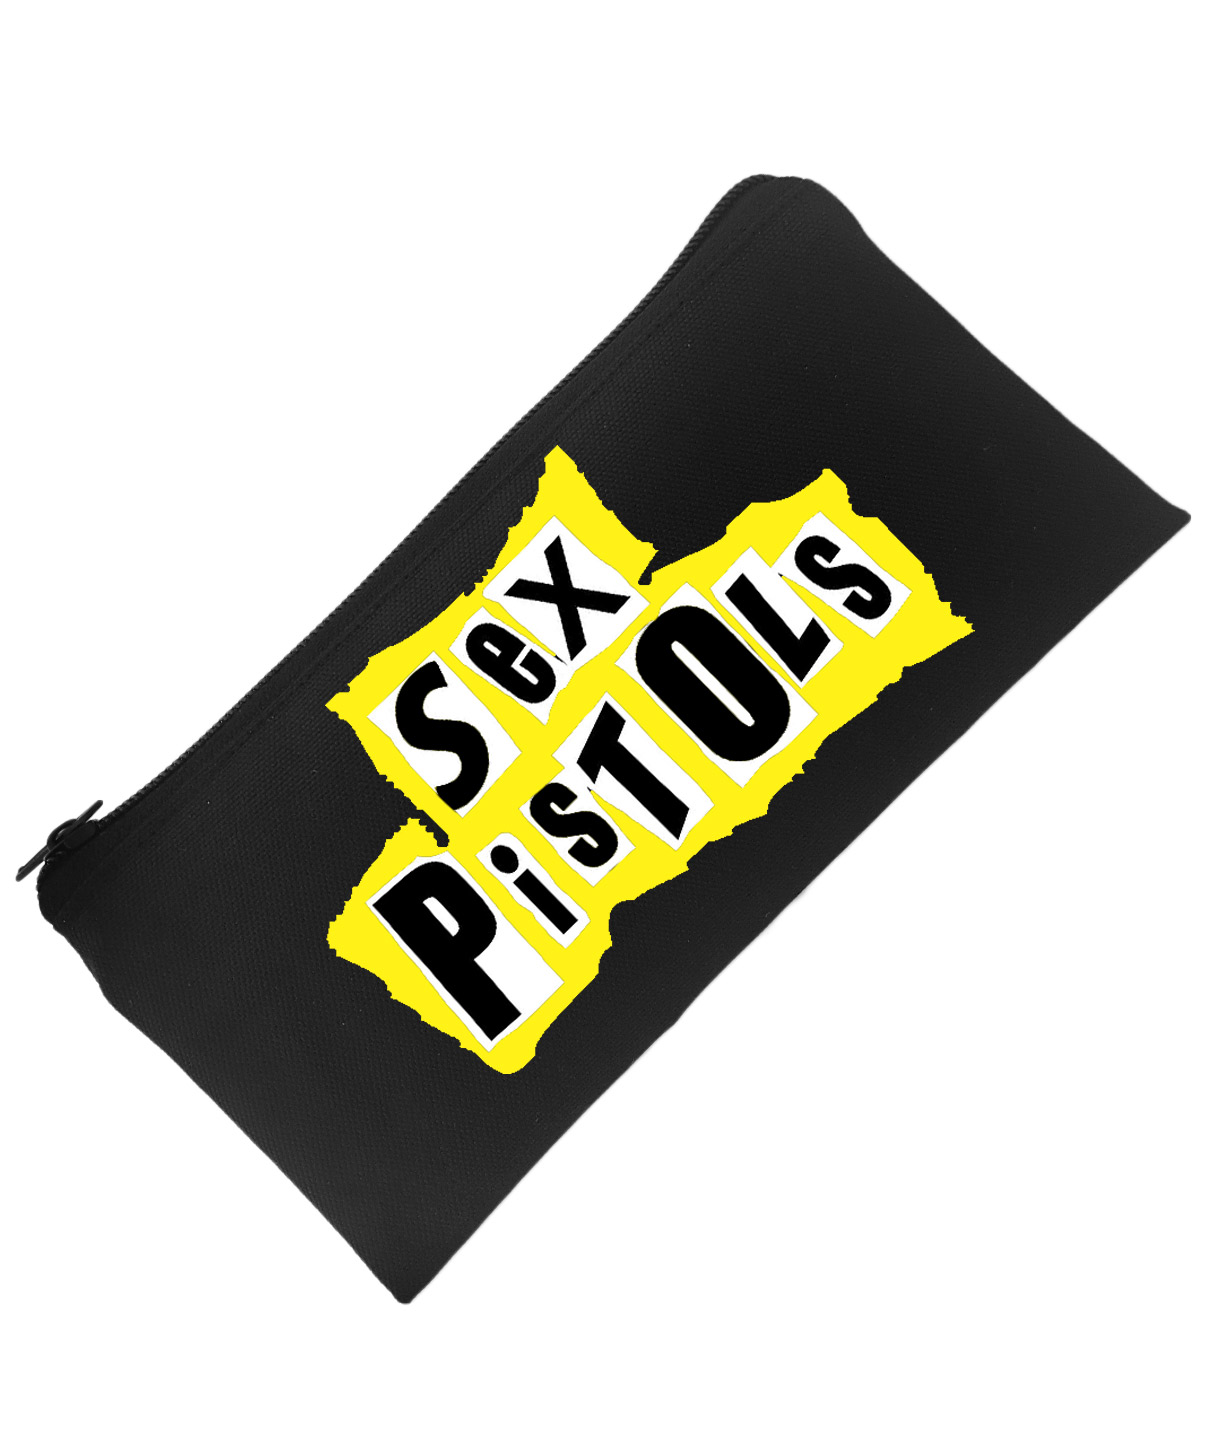 Пенал Sex Pistols - фото 1 - rockbunker.ru